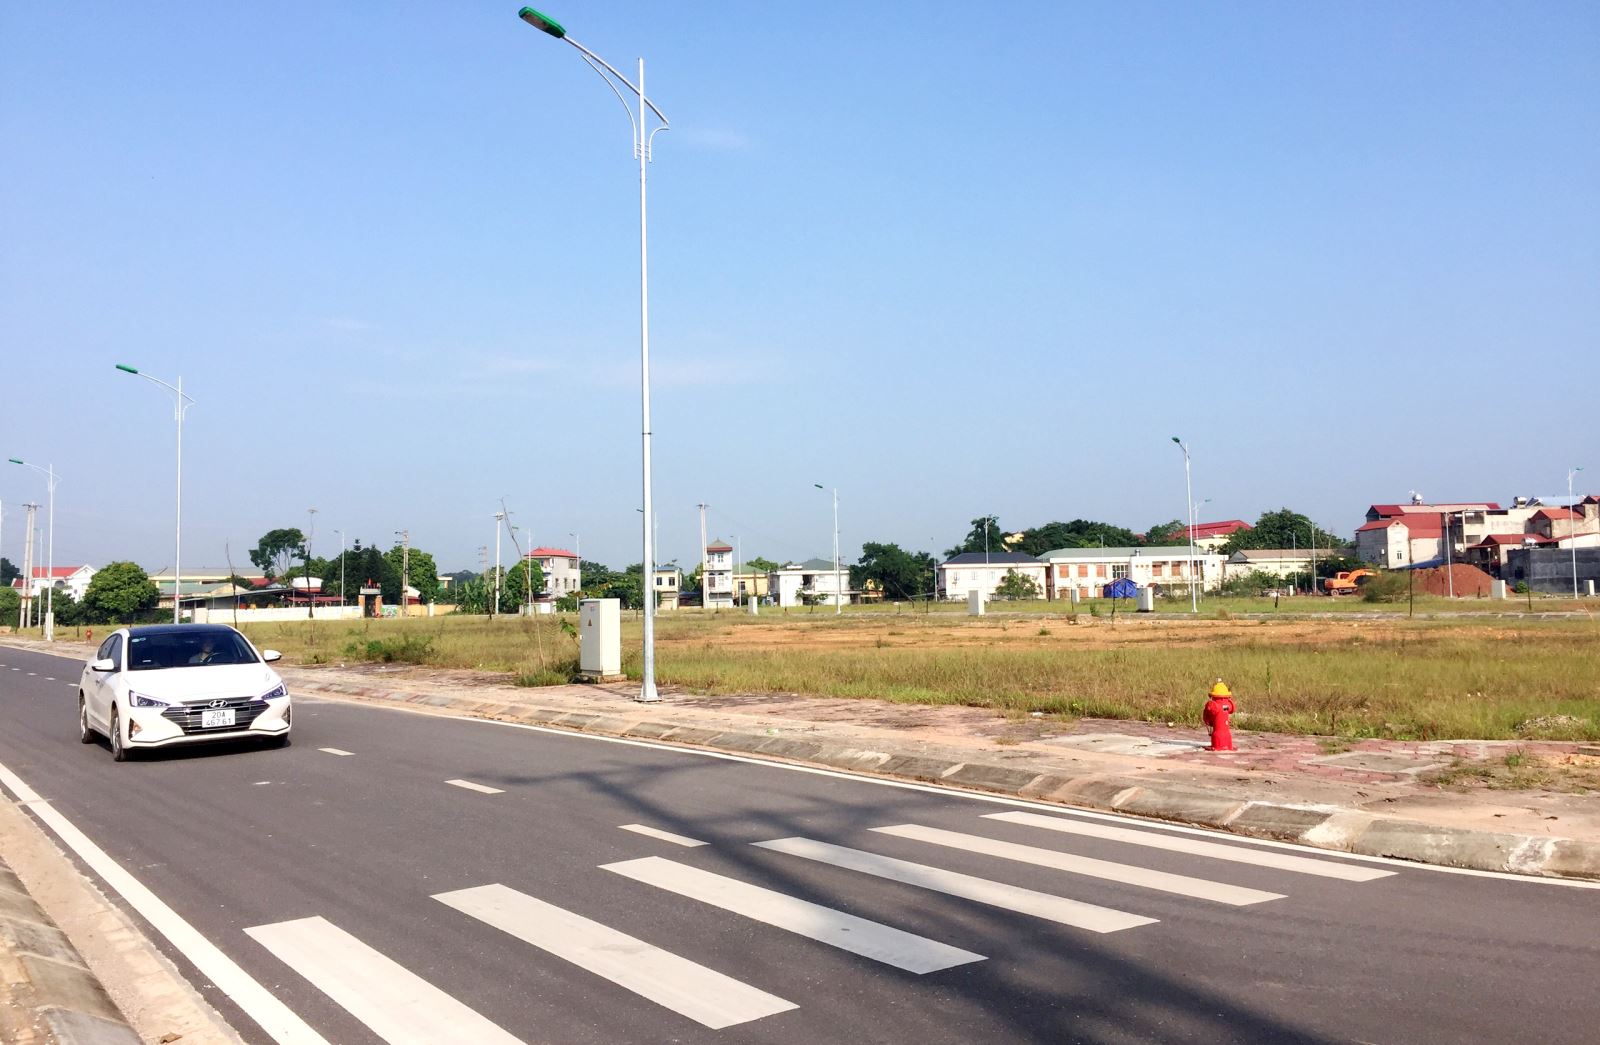  Sau 4 tháng đấu giá 143 lô đất tại Khu đô thị số 4, thị trấn Hương Sơn (Phú Bình), đến nay mới có 1 hộ đang xây nhà. Nhiều lô còn lại vẫn đang tiếp tục được rao bán.